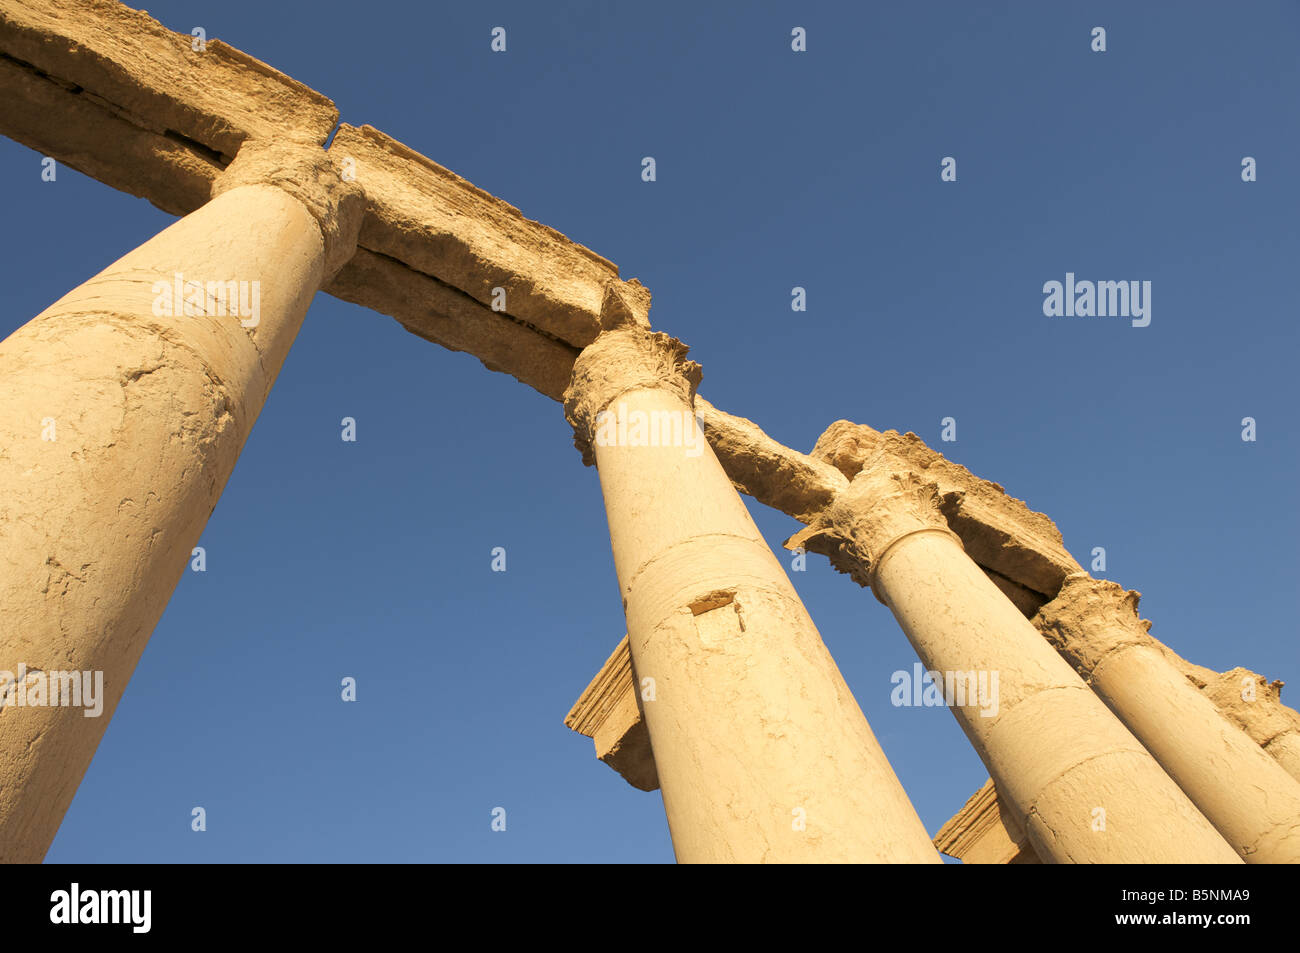 Pillars, Palmyra, Syria Stock Photo